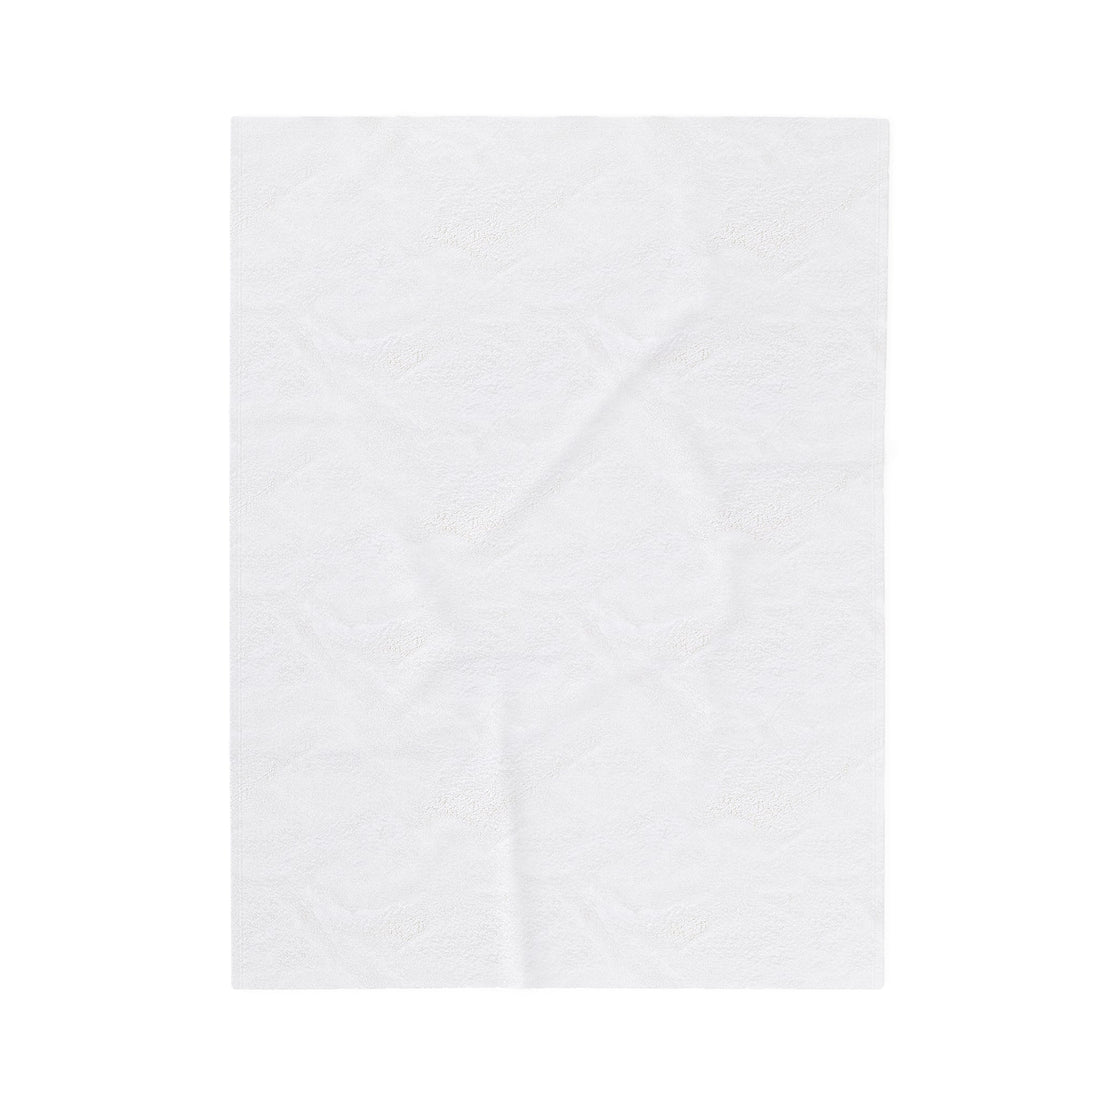 Cow Velveteen Plush Blanket - All Over Prints - Positively Sassy - Cow Velveteen Plush Blanket